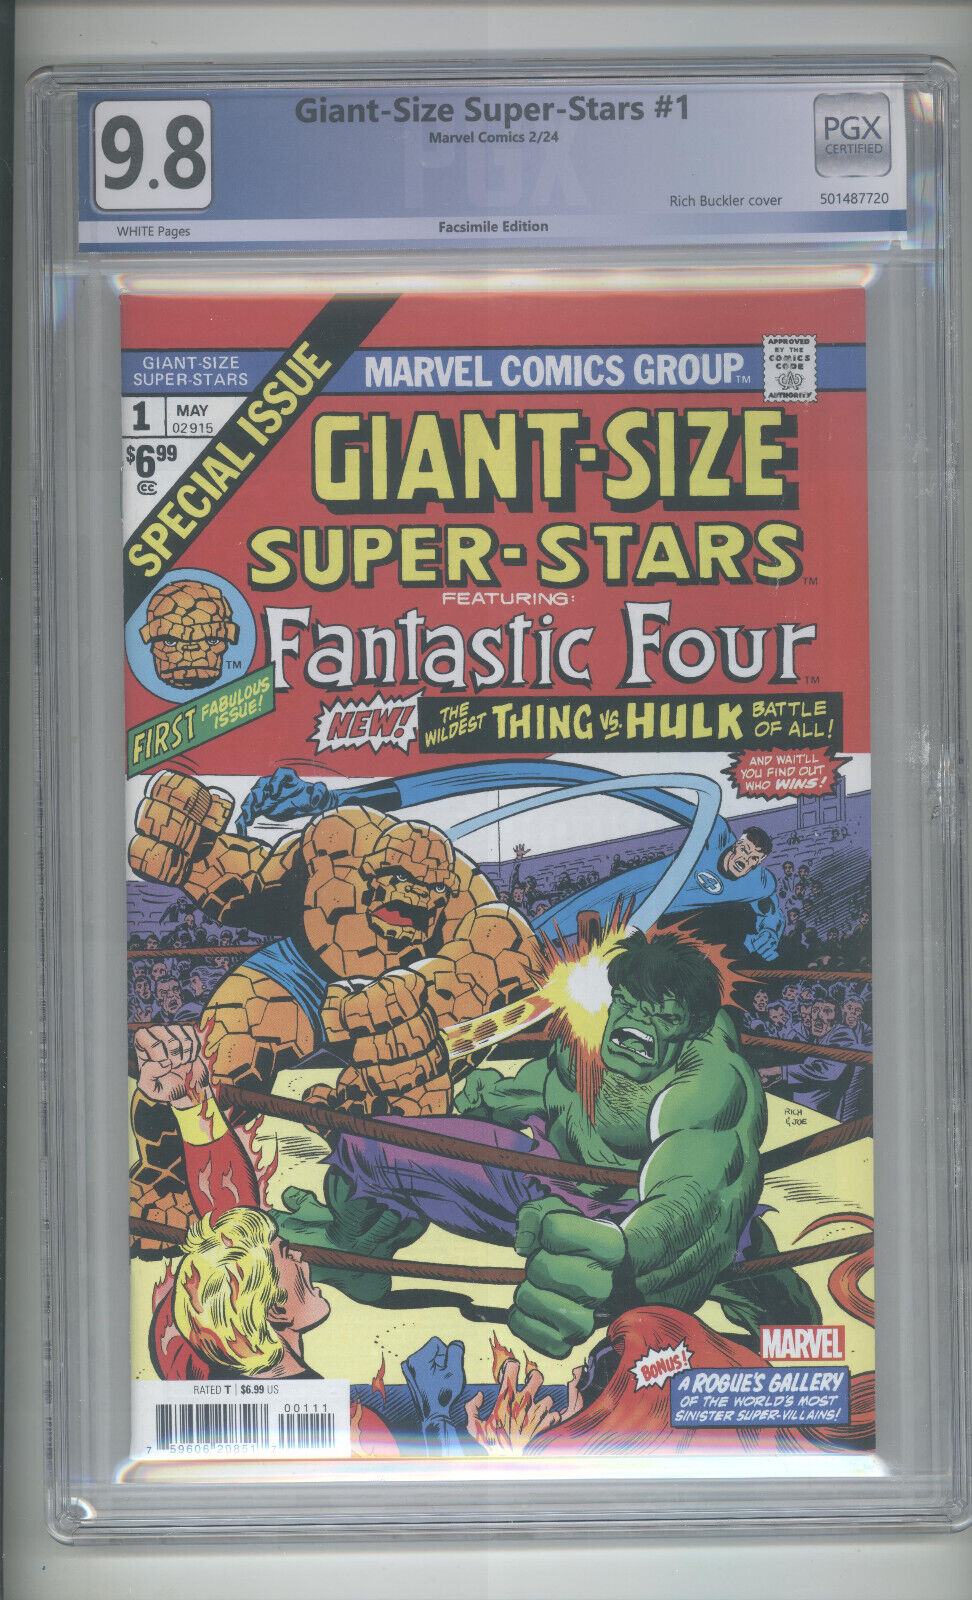 Giant-Size Super-Stars #1  PGX 9.8   Facsimile Reprint Hulk vs Thing